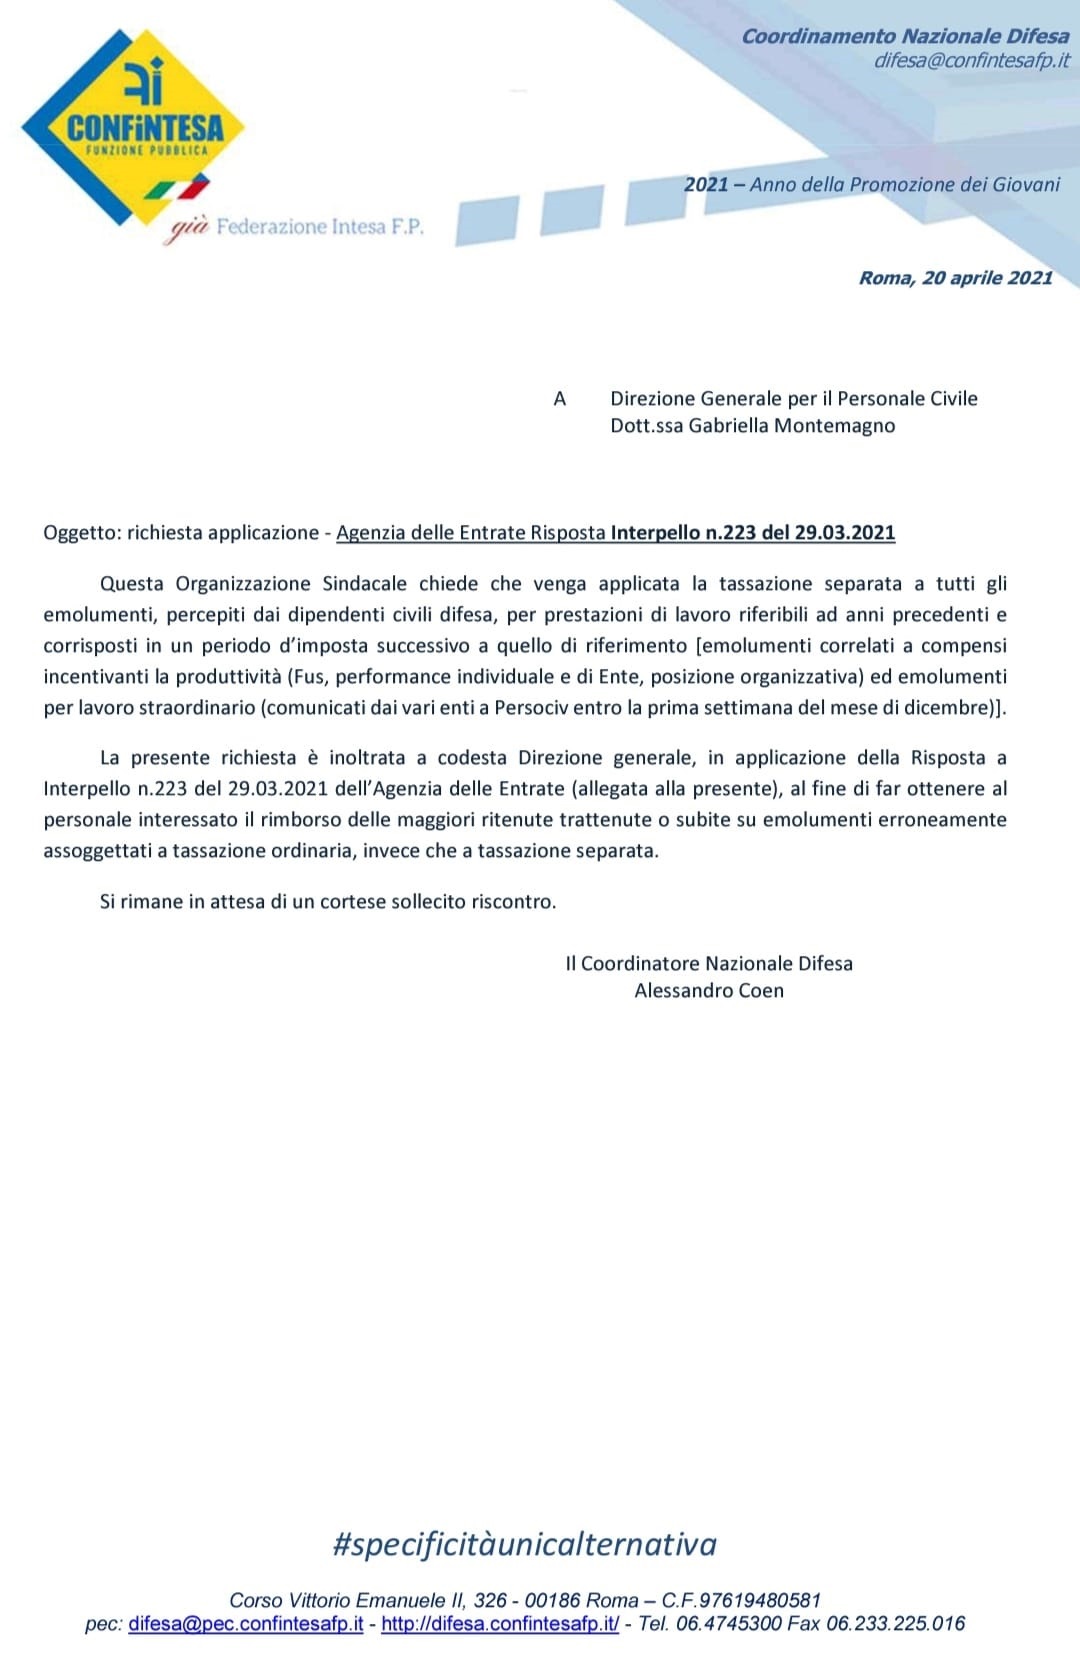 Tassazione separata – richiesta a Persociv l’applicazione – Agenzia delle Entrate Risposta Interpello n.223 del 29.03.2021